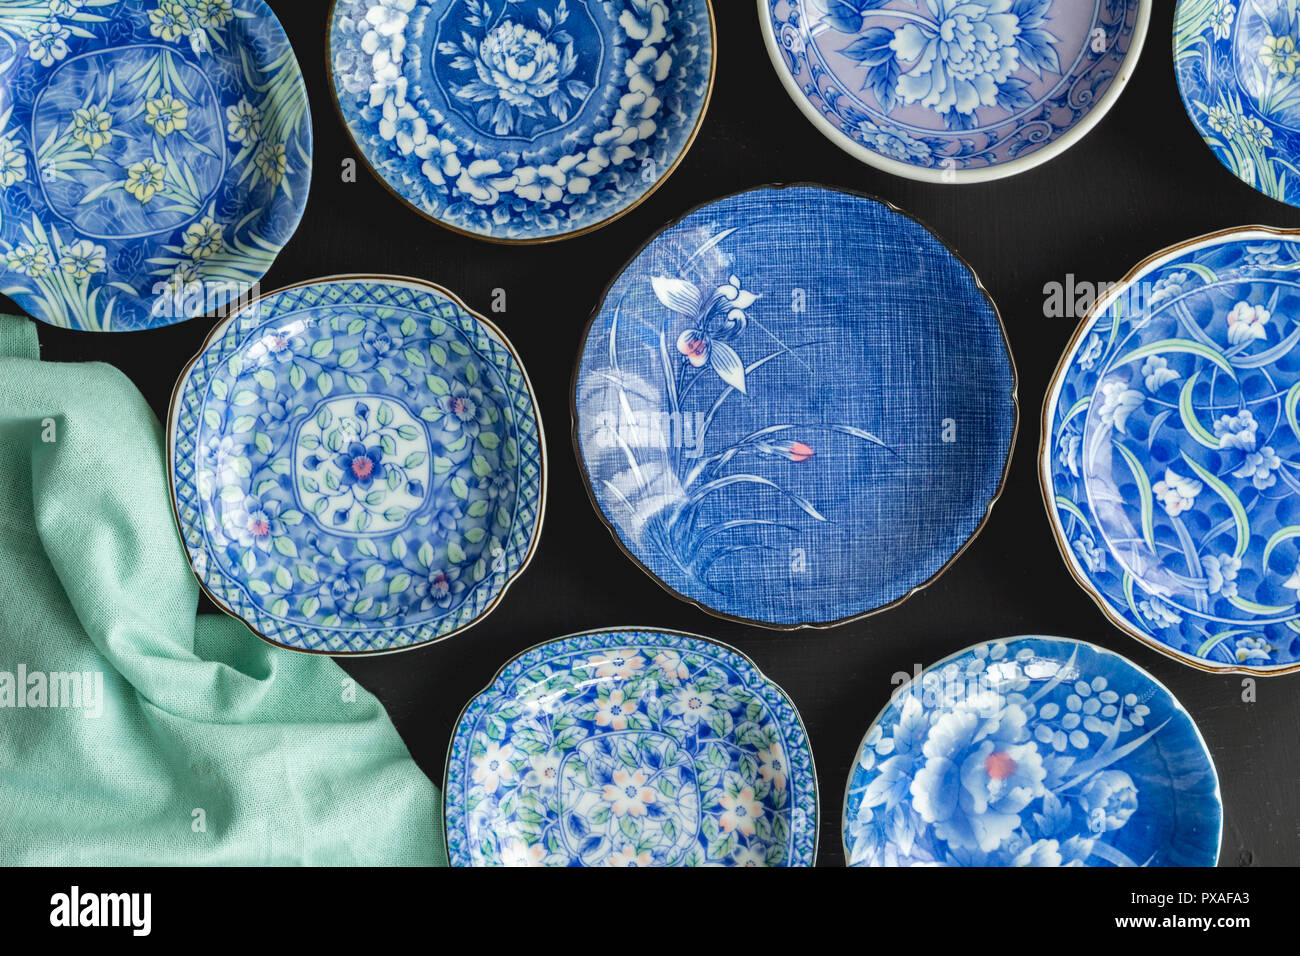 Blau und Weiß dekorative Japanische Platten auf schwarzem Hintergrund -  Ansicht von oben Foto der Sammlung von keramischen Platten Stockfotografie  - Alamy